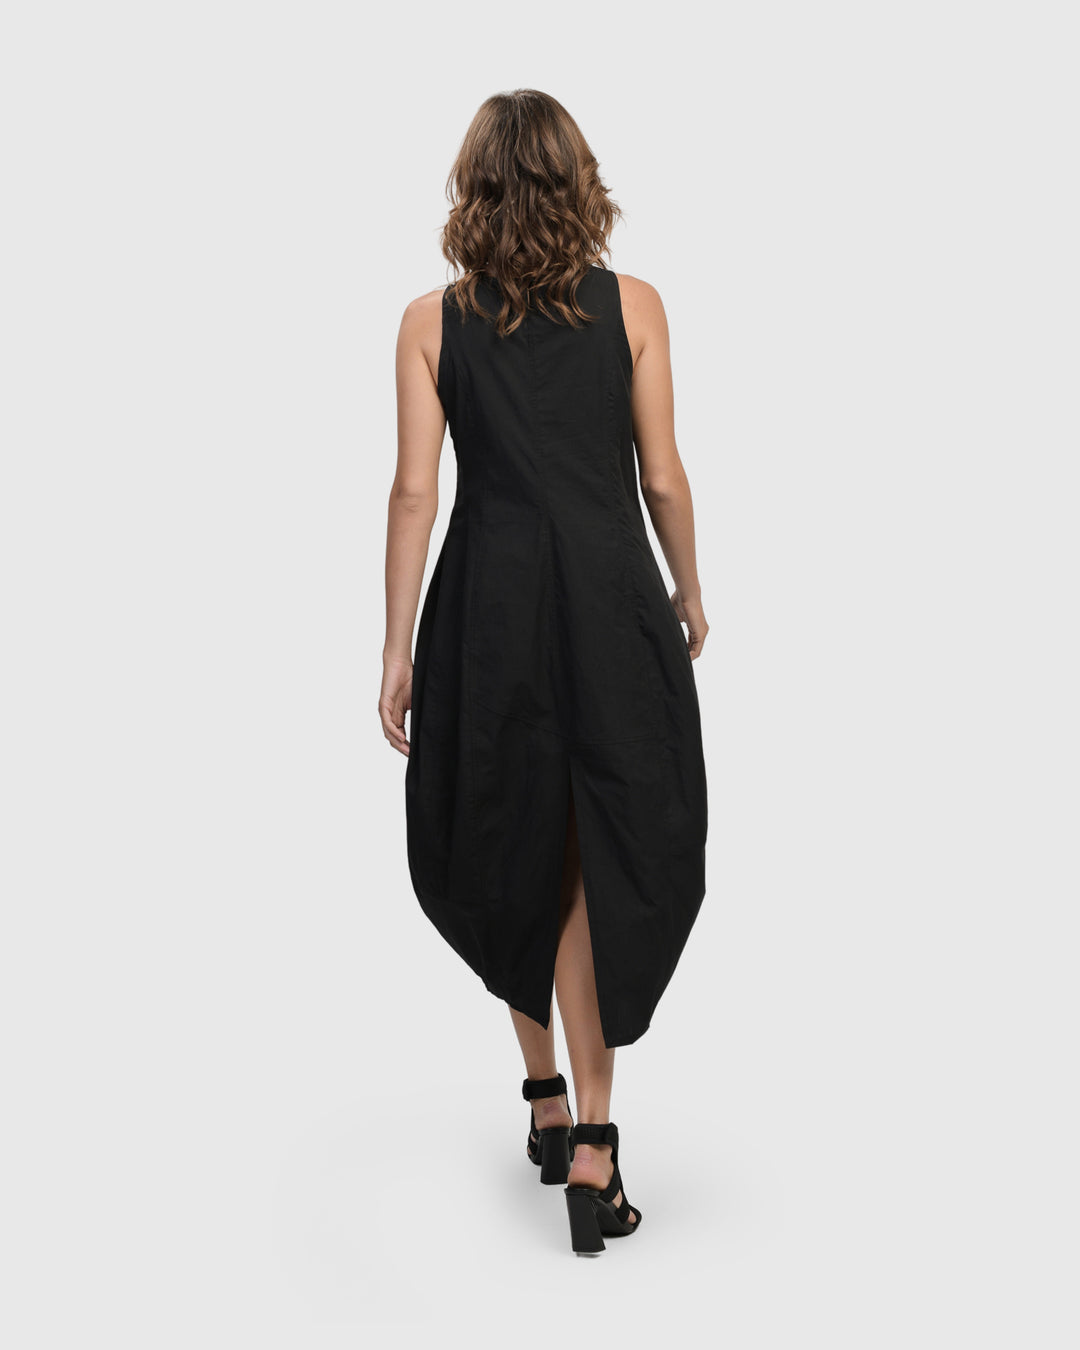 Urban Soho Sleeveless Cocoon Dress, Black